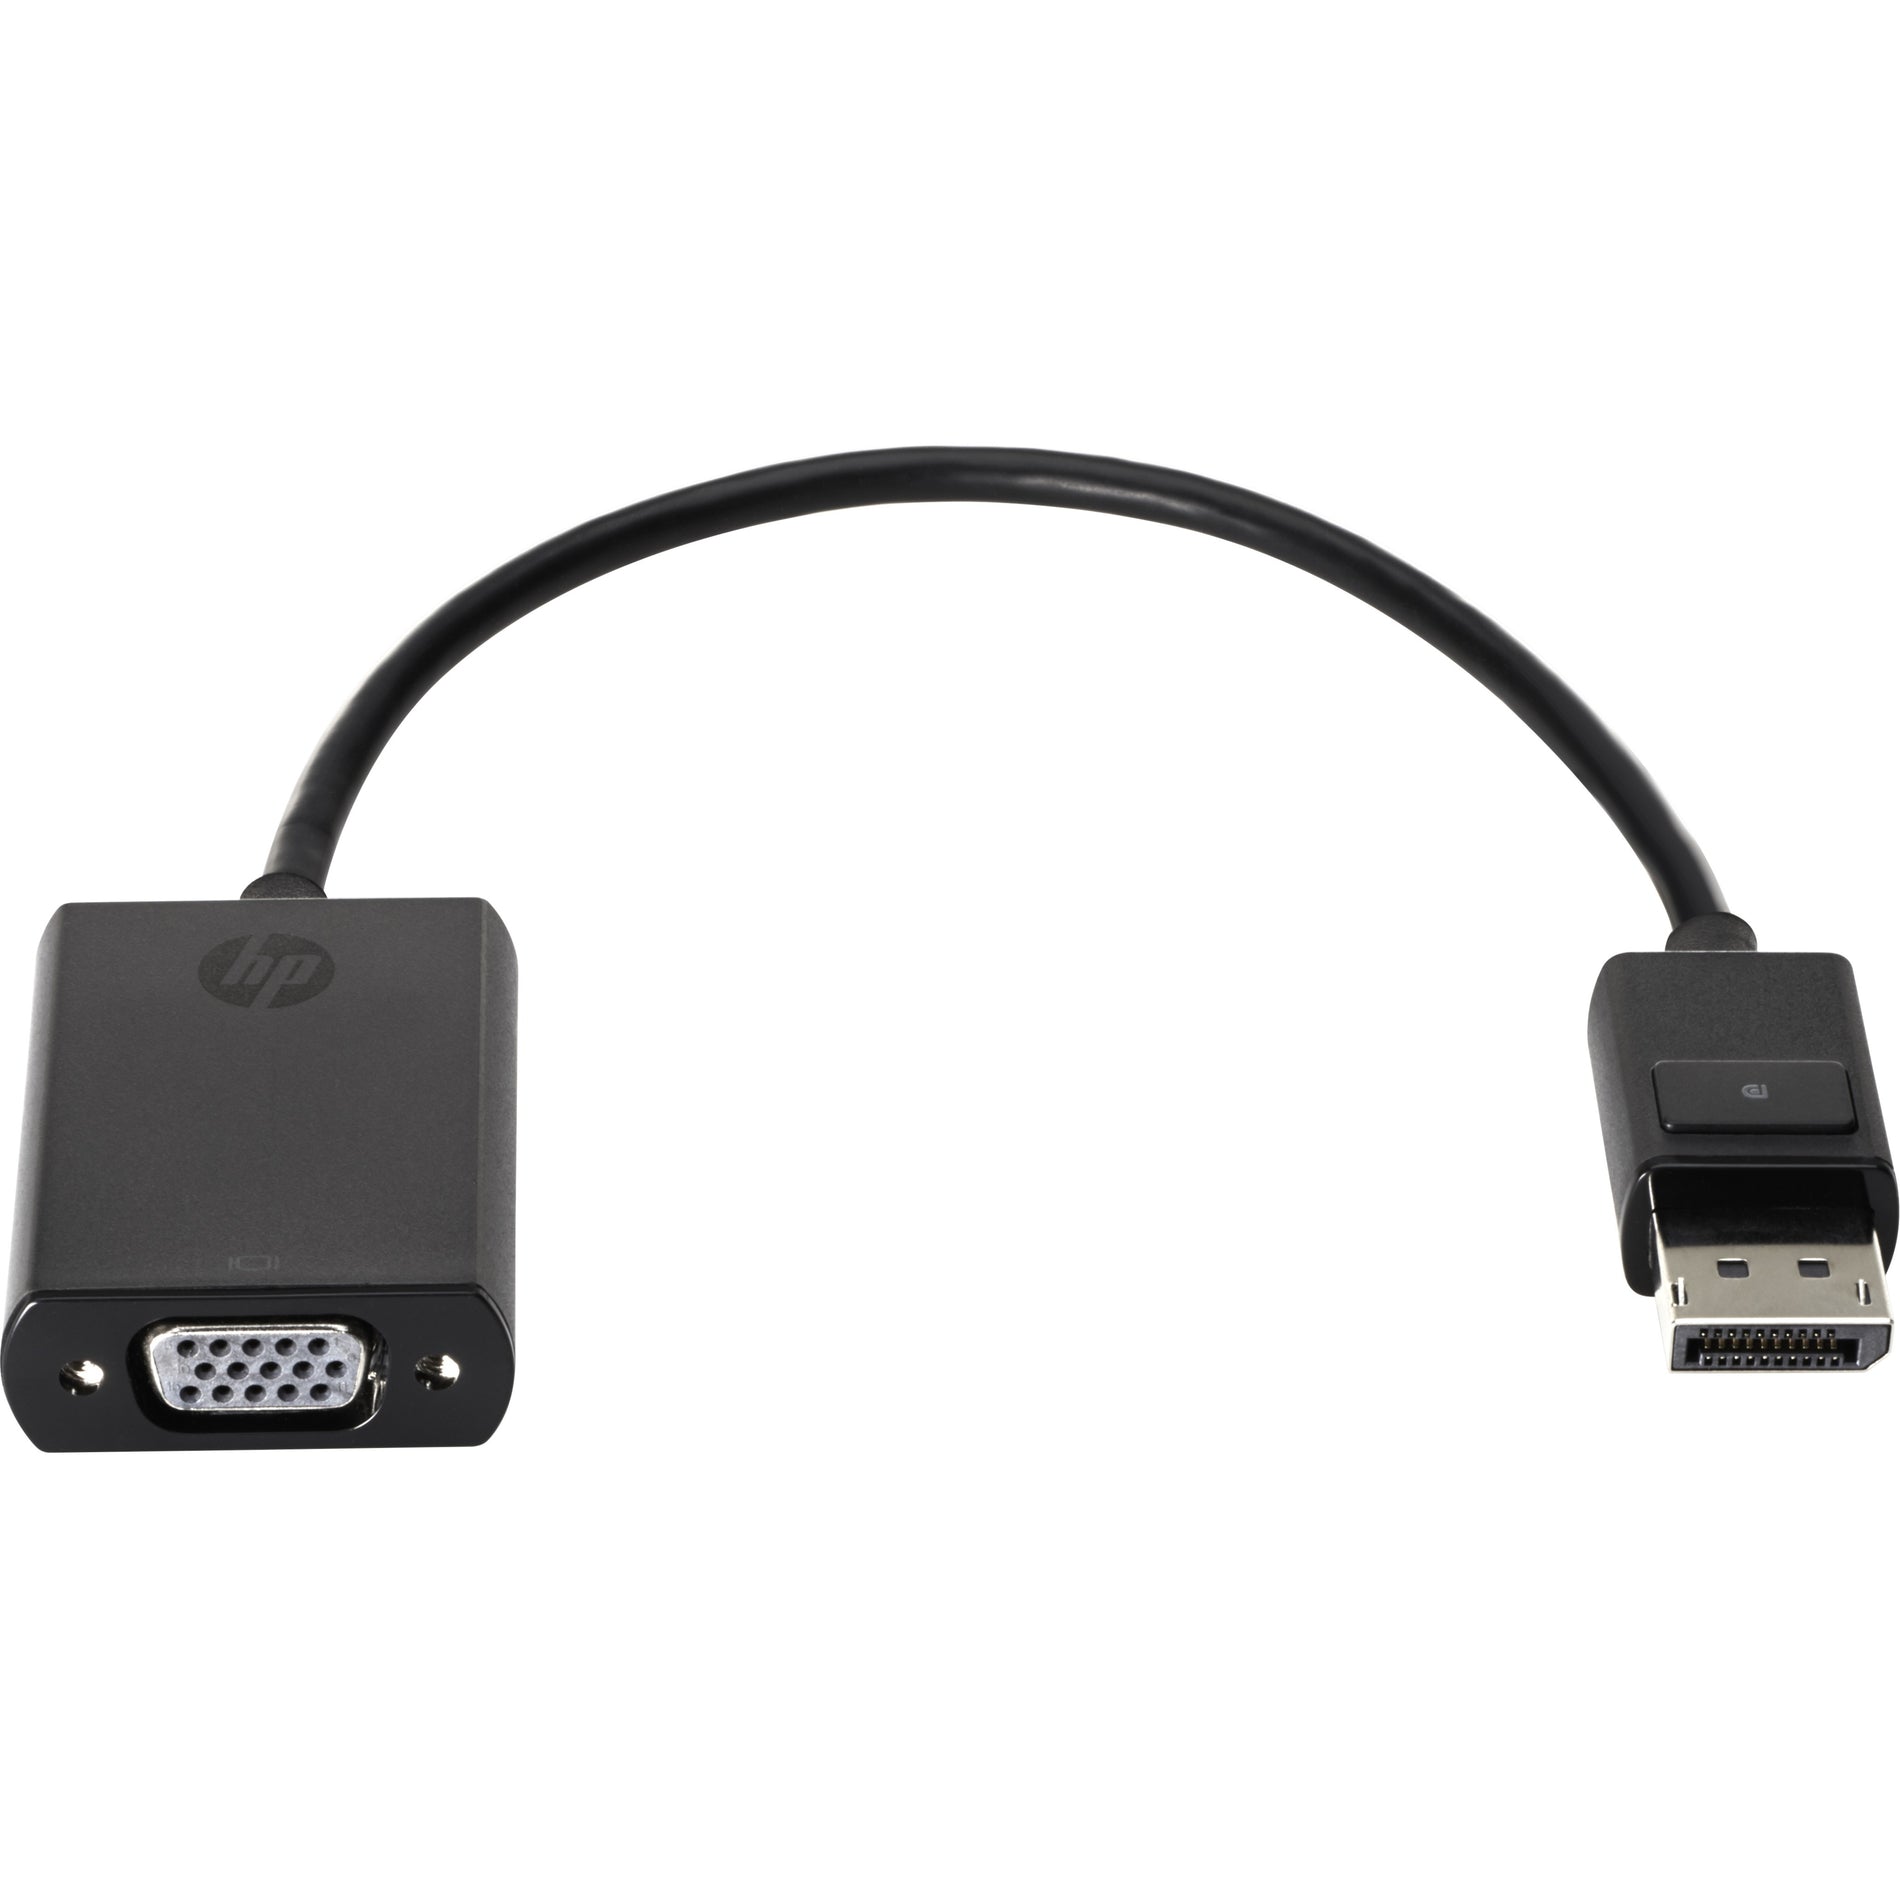 HP F7W97AA Adaptateur DisplayPort vers VGA Connectez votre appareil DisplayPort à un moniteur VGA